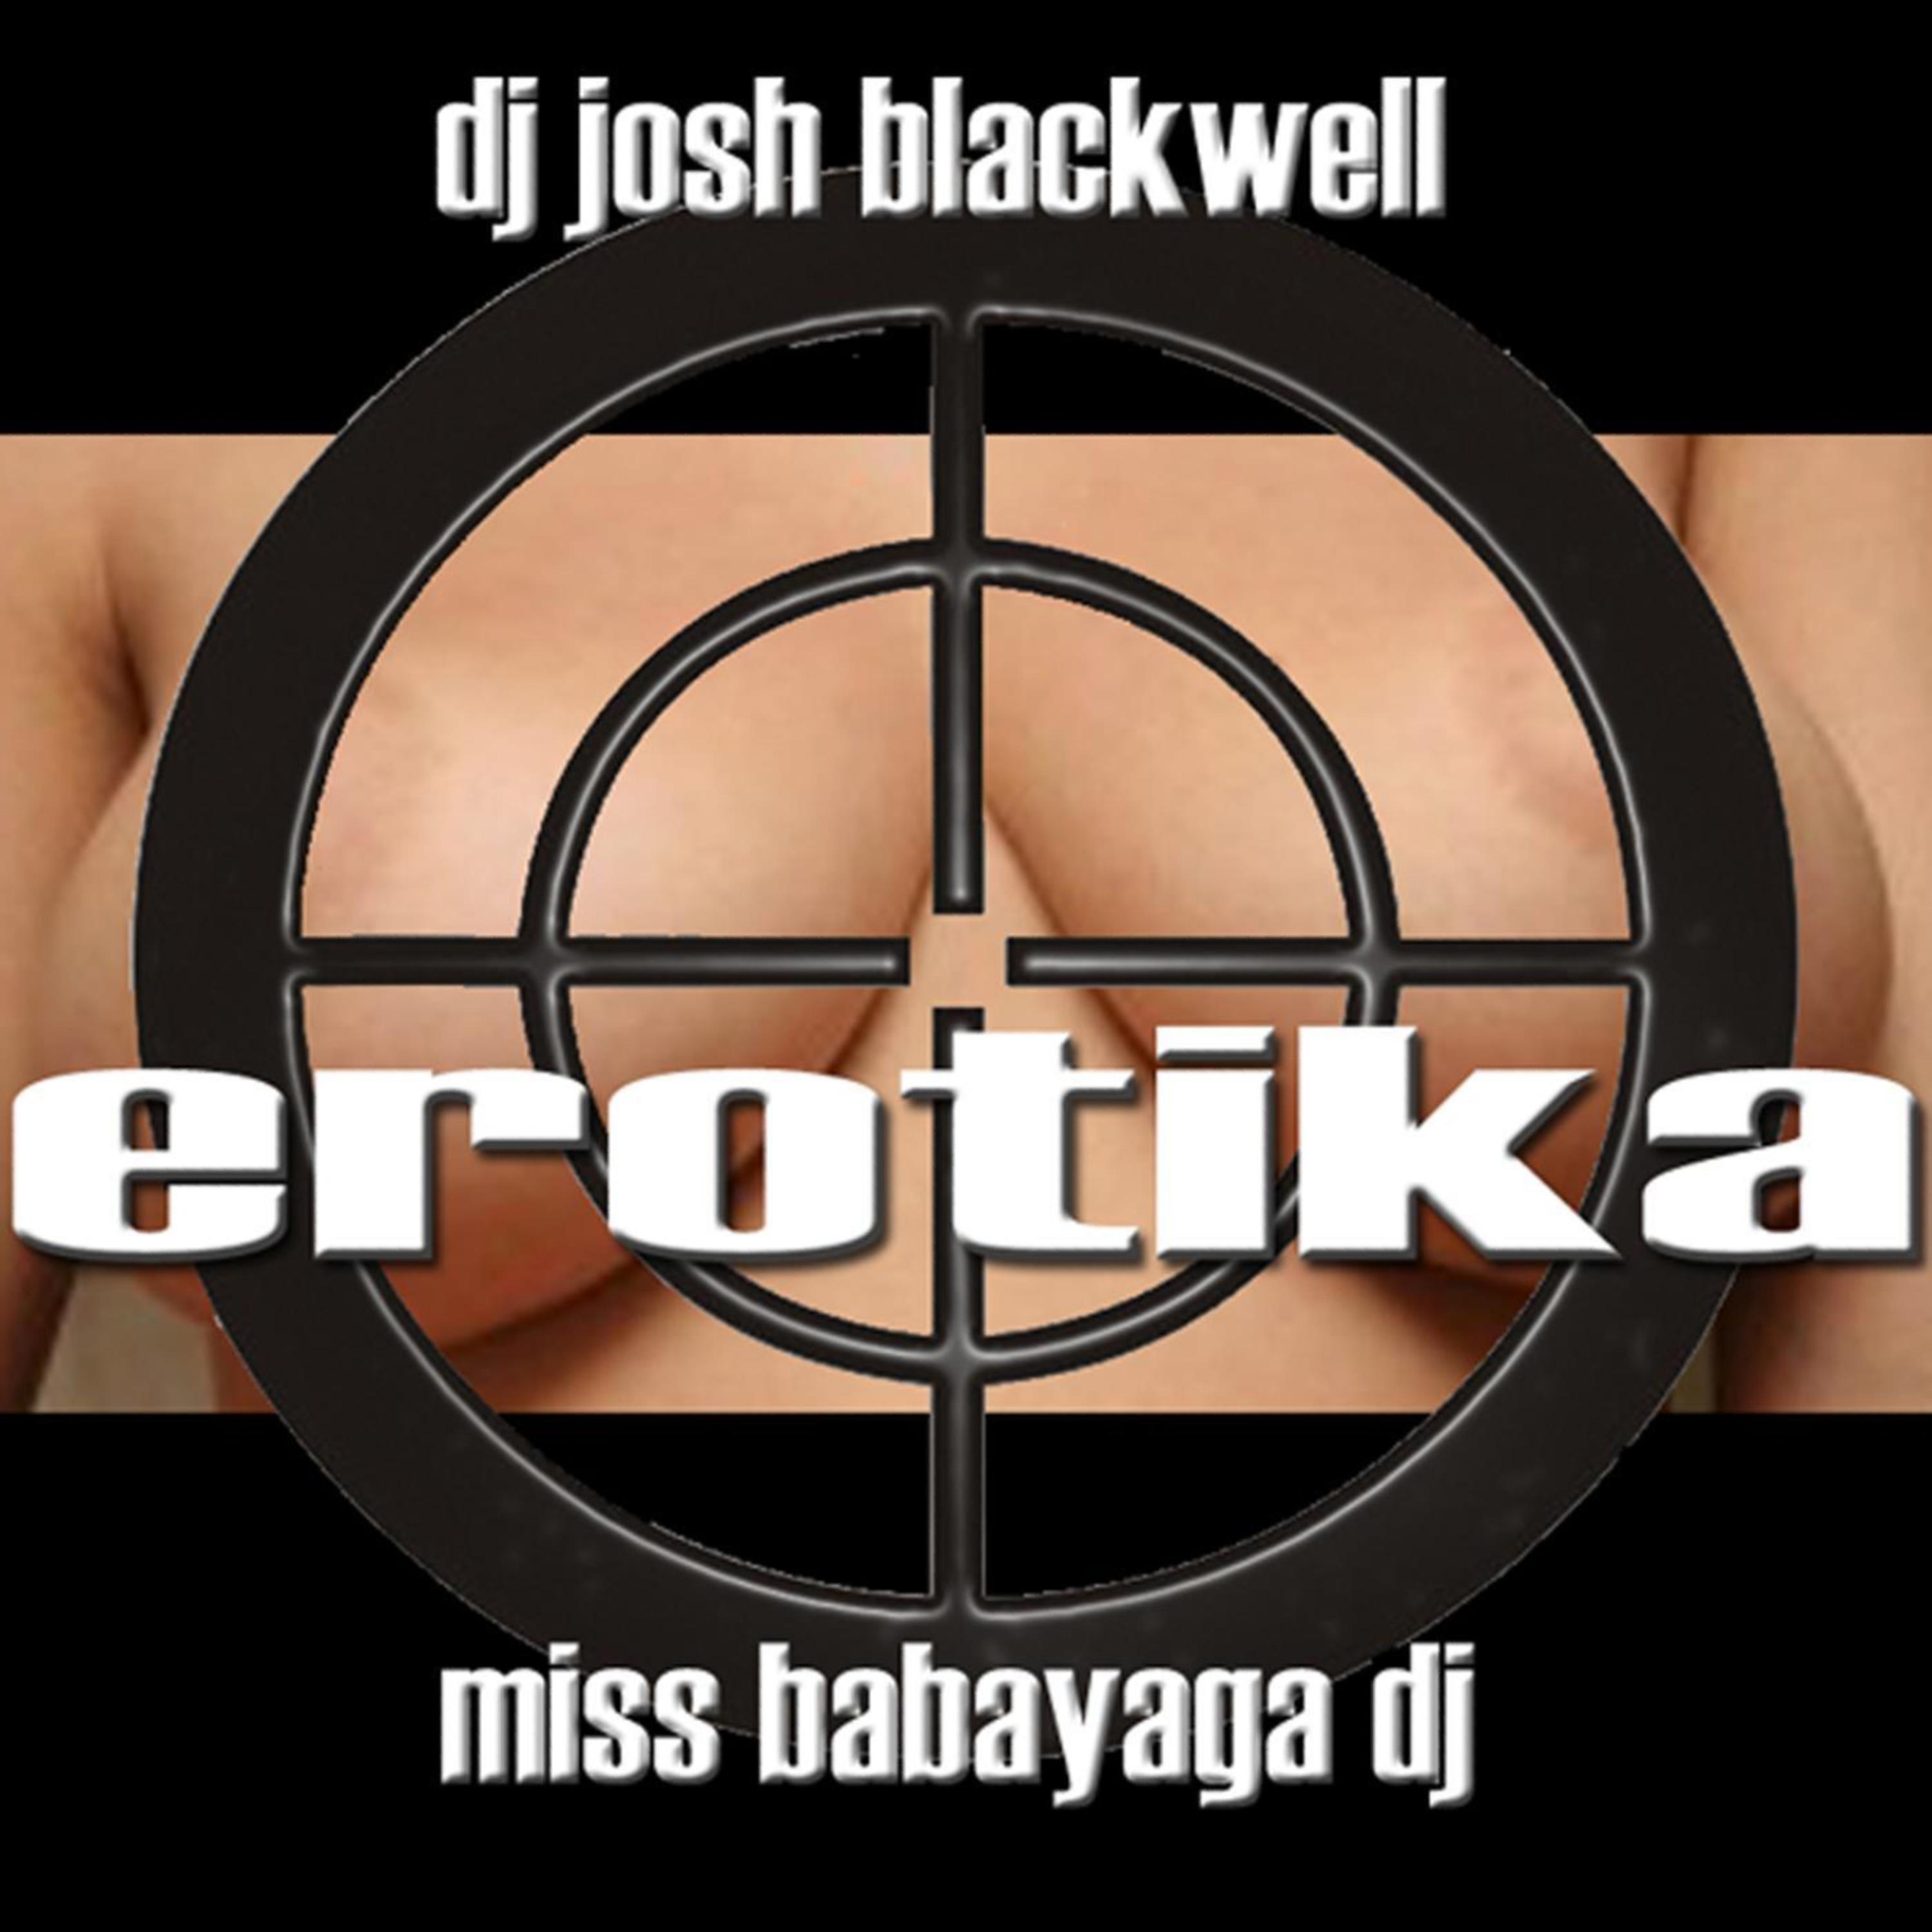 Постер альбома Erotika